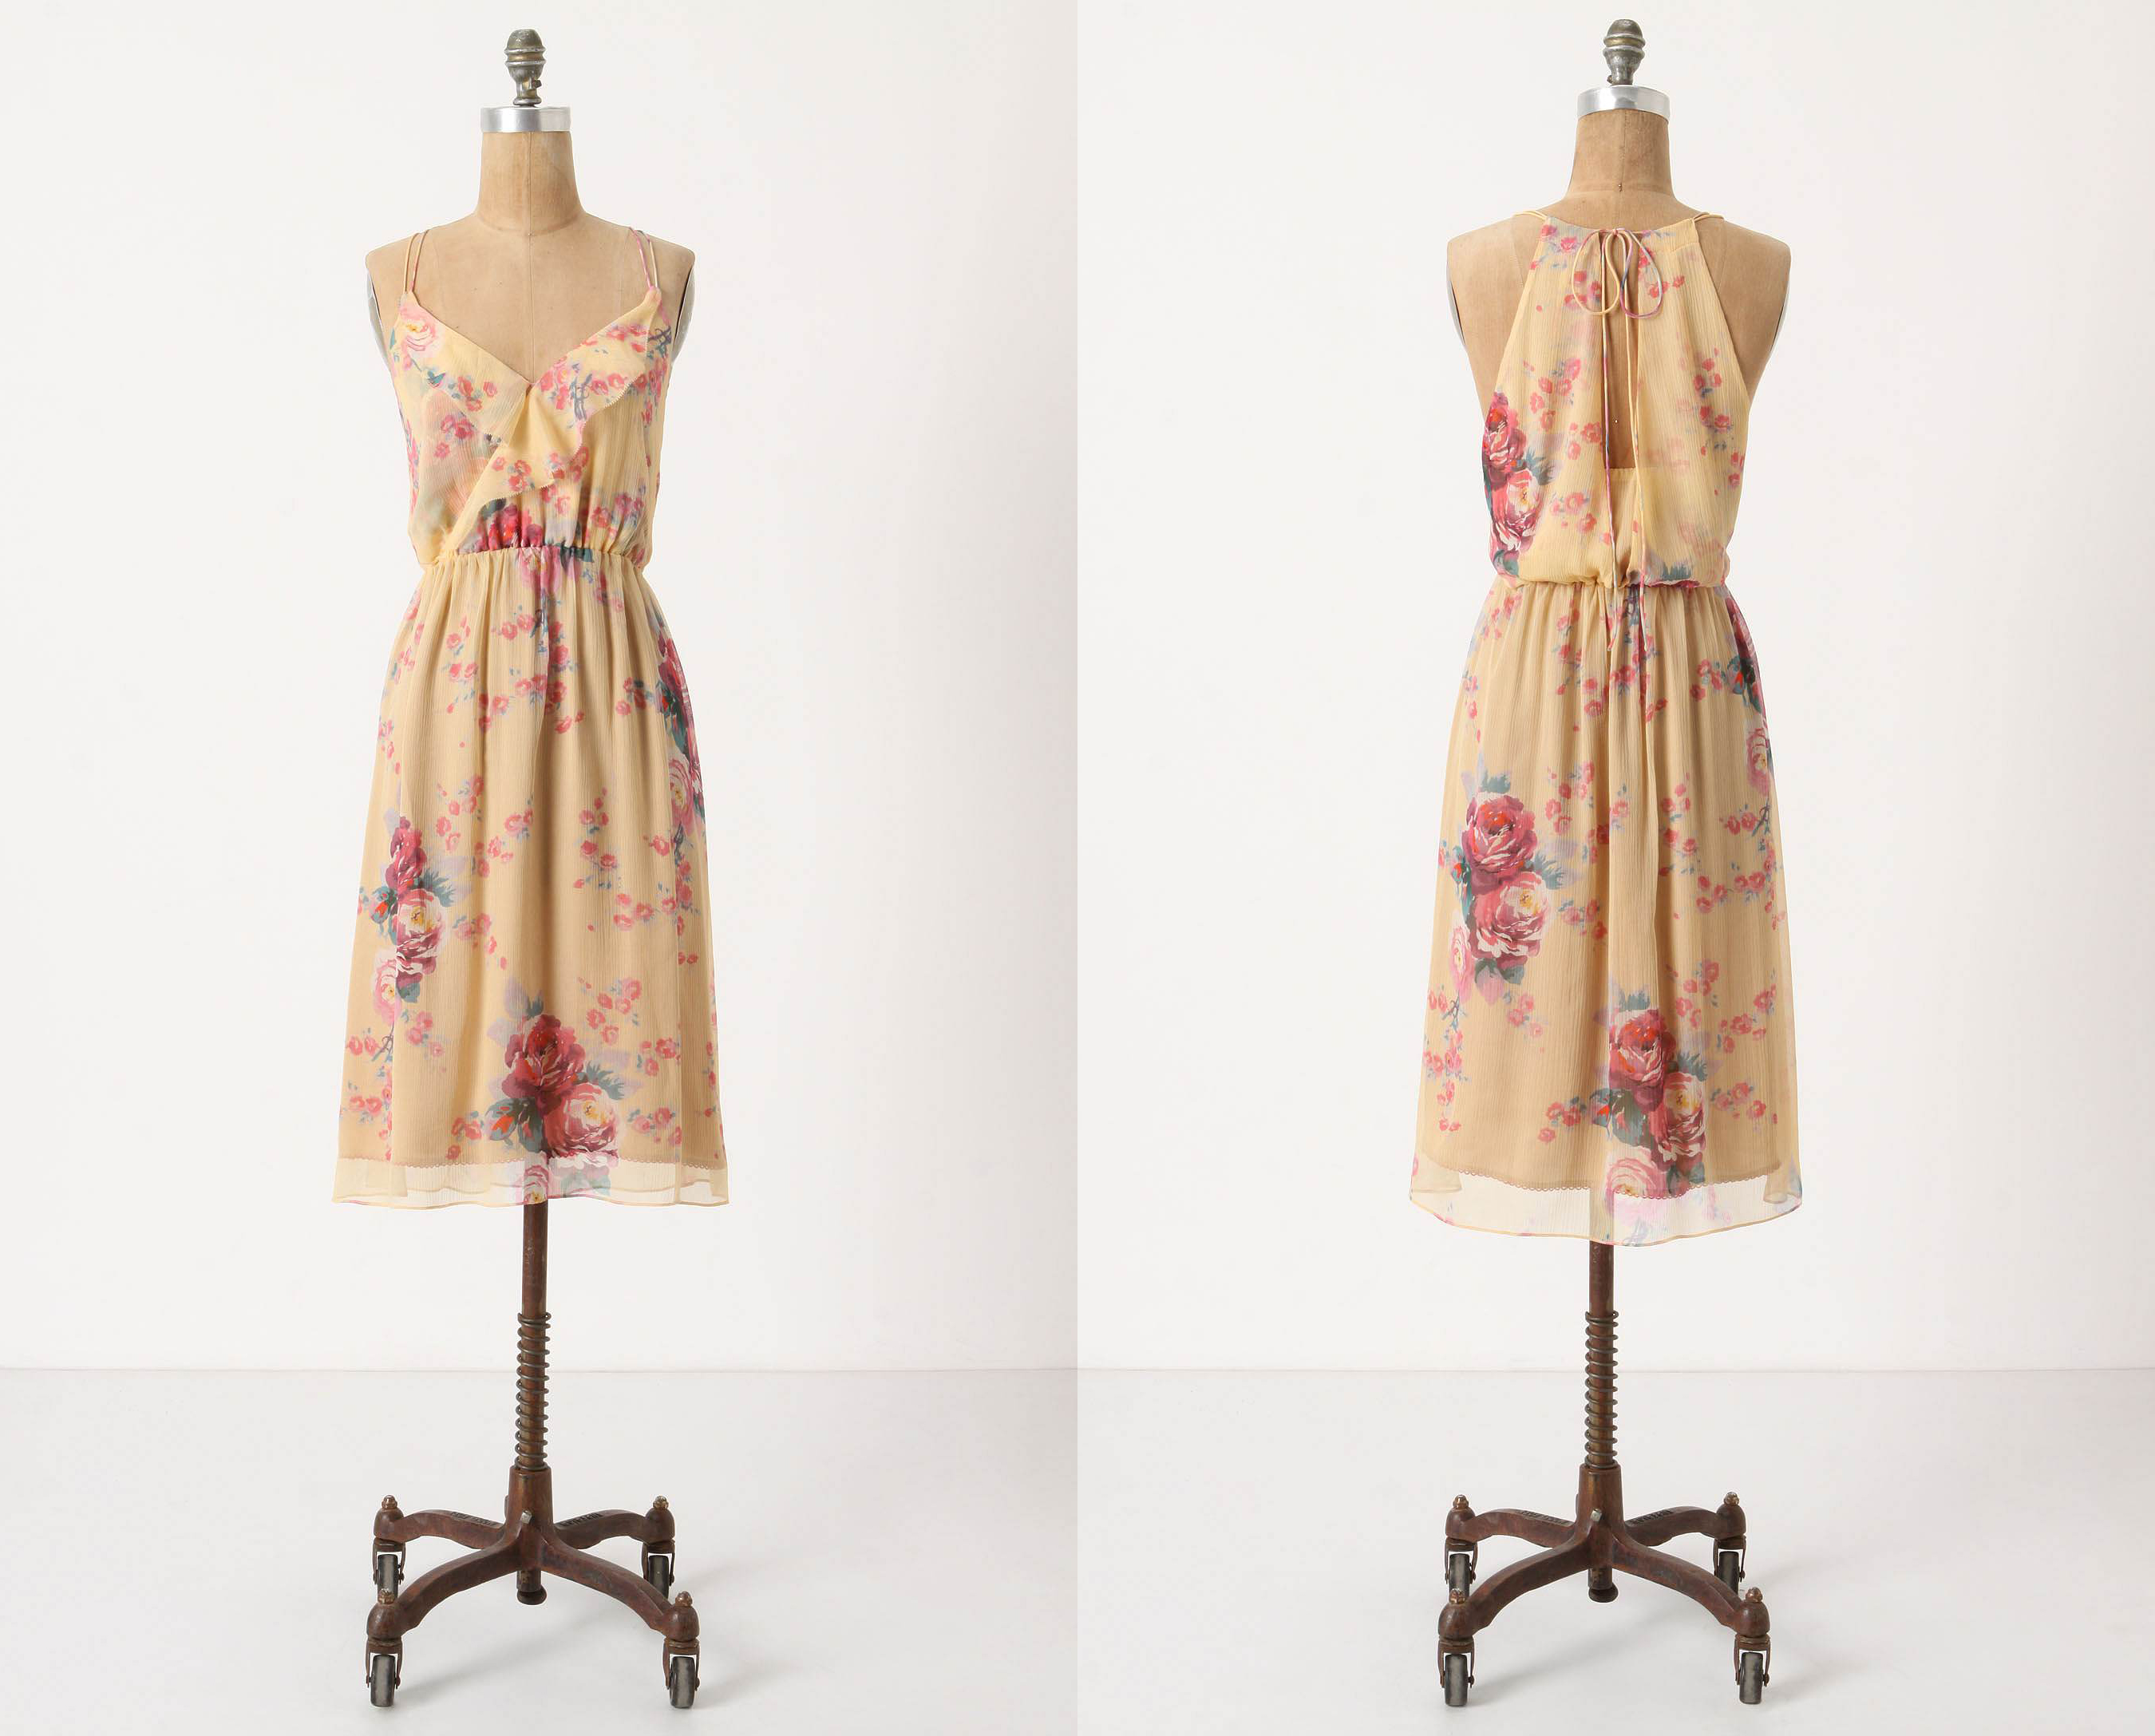 Rose & Gold Slip Dress by Meadow Rue